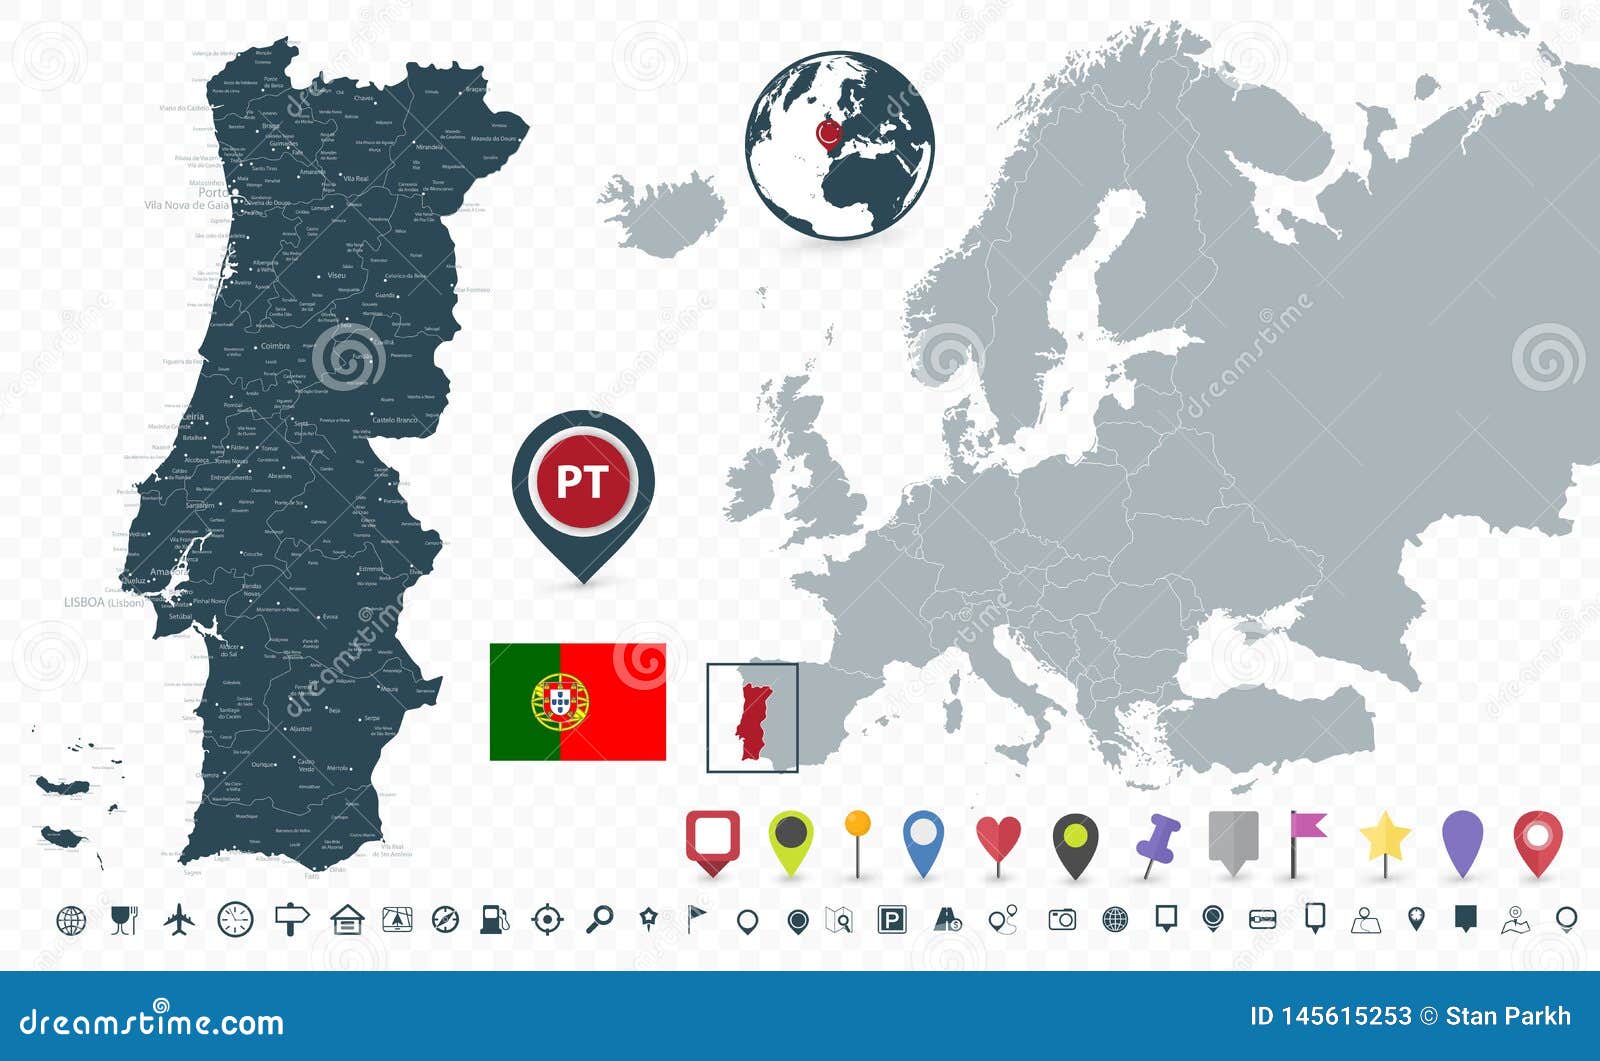 Mapa da Europa e Portugal . Ilustração de stock por ©Tatiana53 #45997499